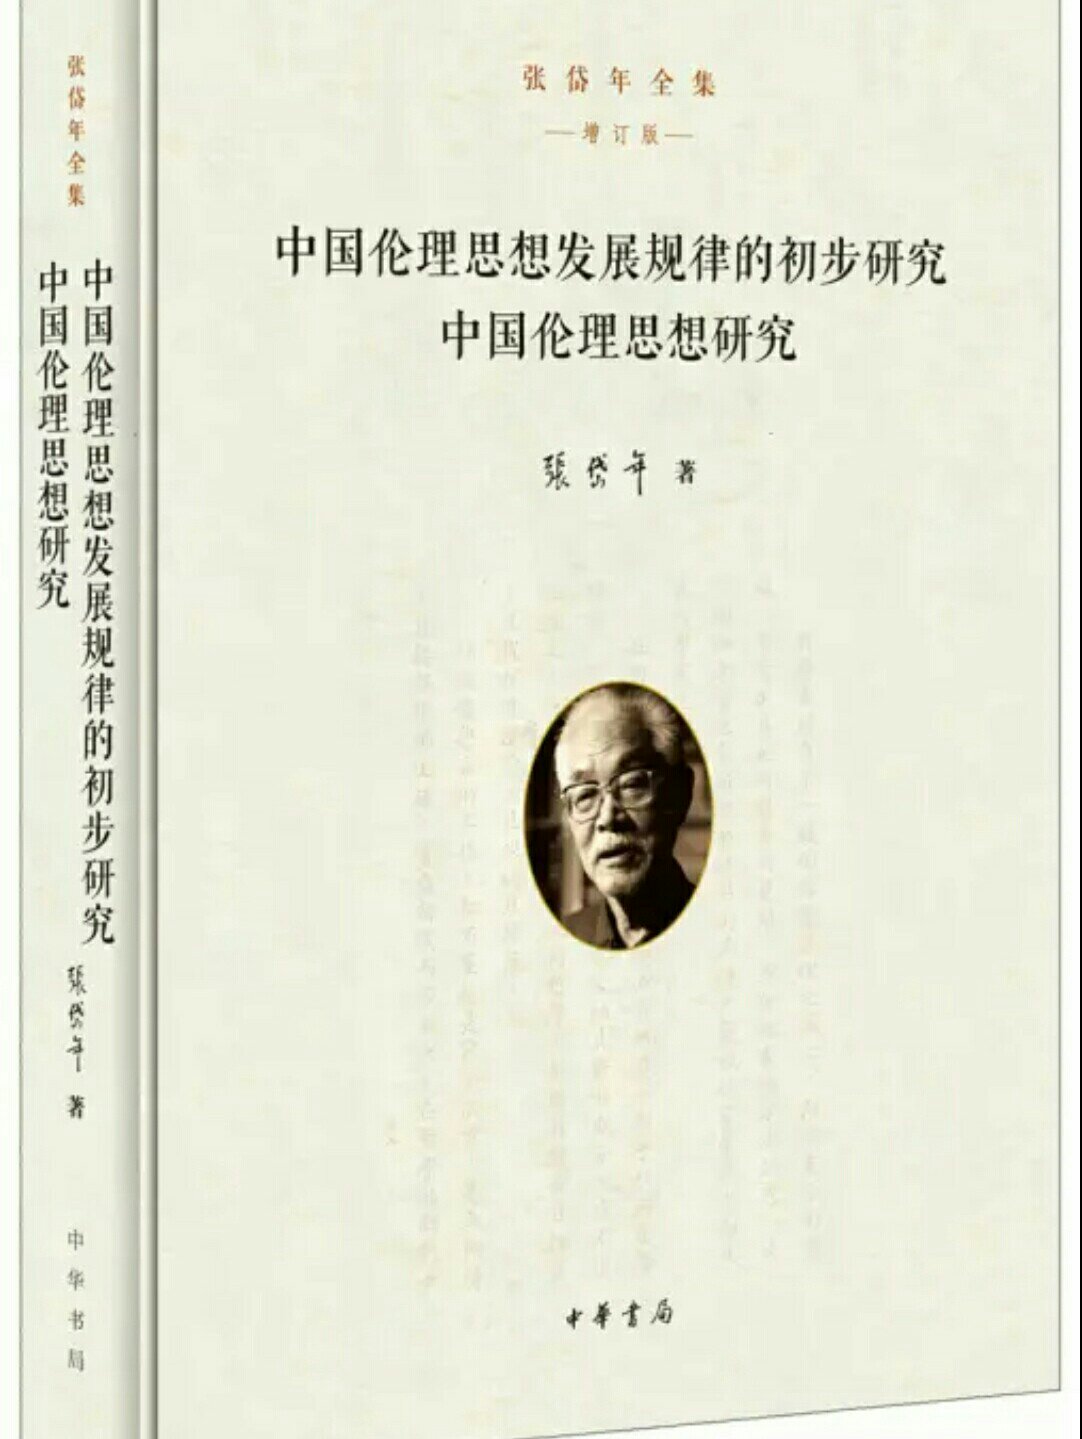 张岱年的学术研究主要分三个方面：一是中国哲学史的阐释；二是哲学问题的探索；三是文化问题的研讨。在不同的时期，各有不同侧重。